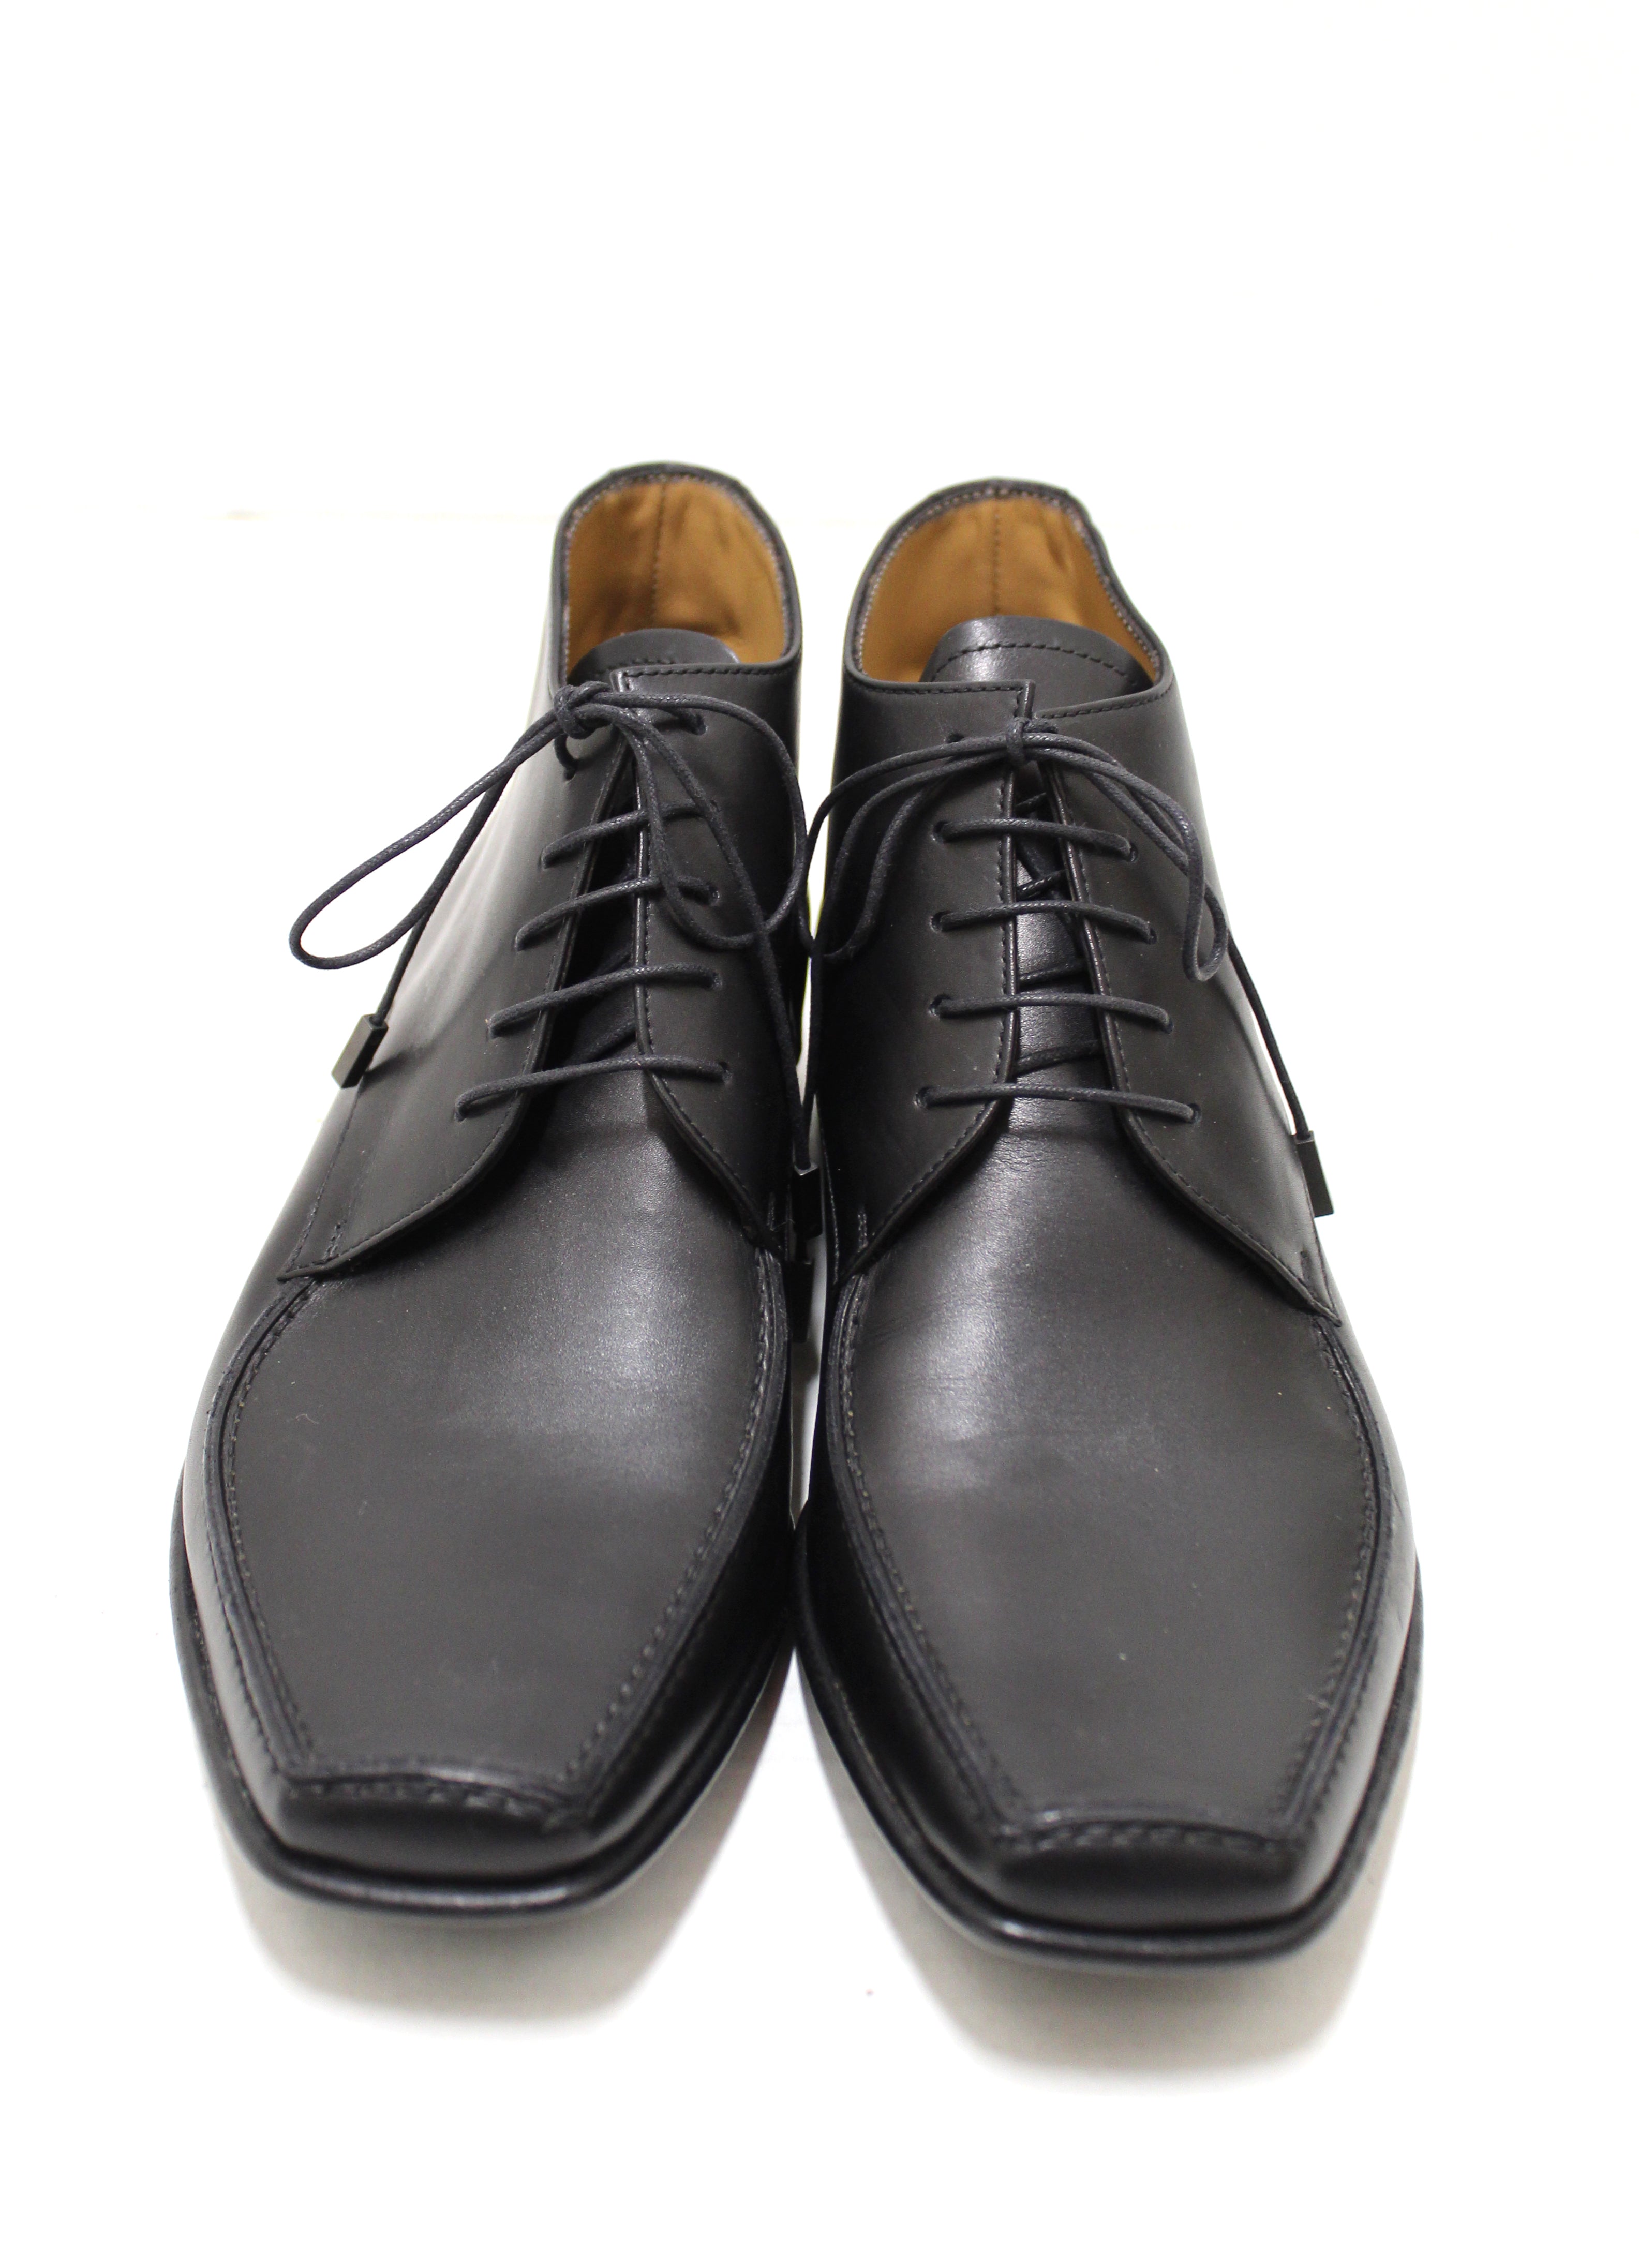 Authentic Louis Vuitton Men's Black Calf Leather Lace Dress Shoes Boot –  Paris Station Shop